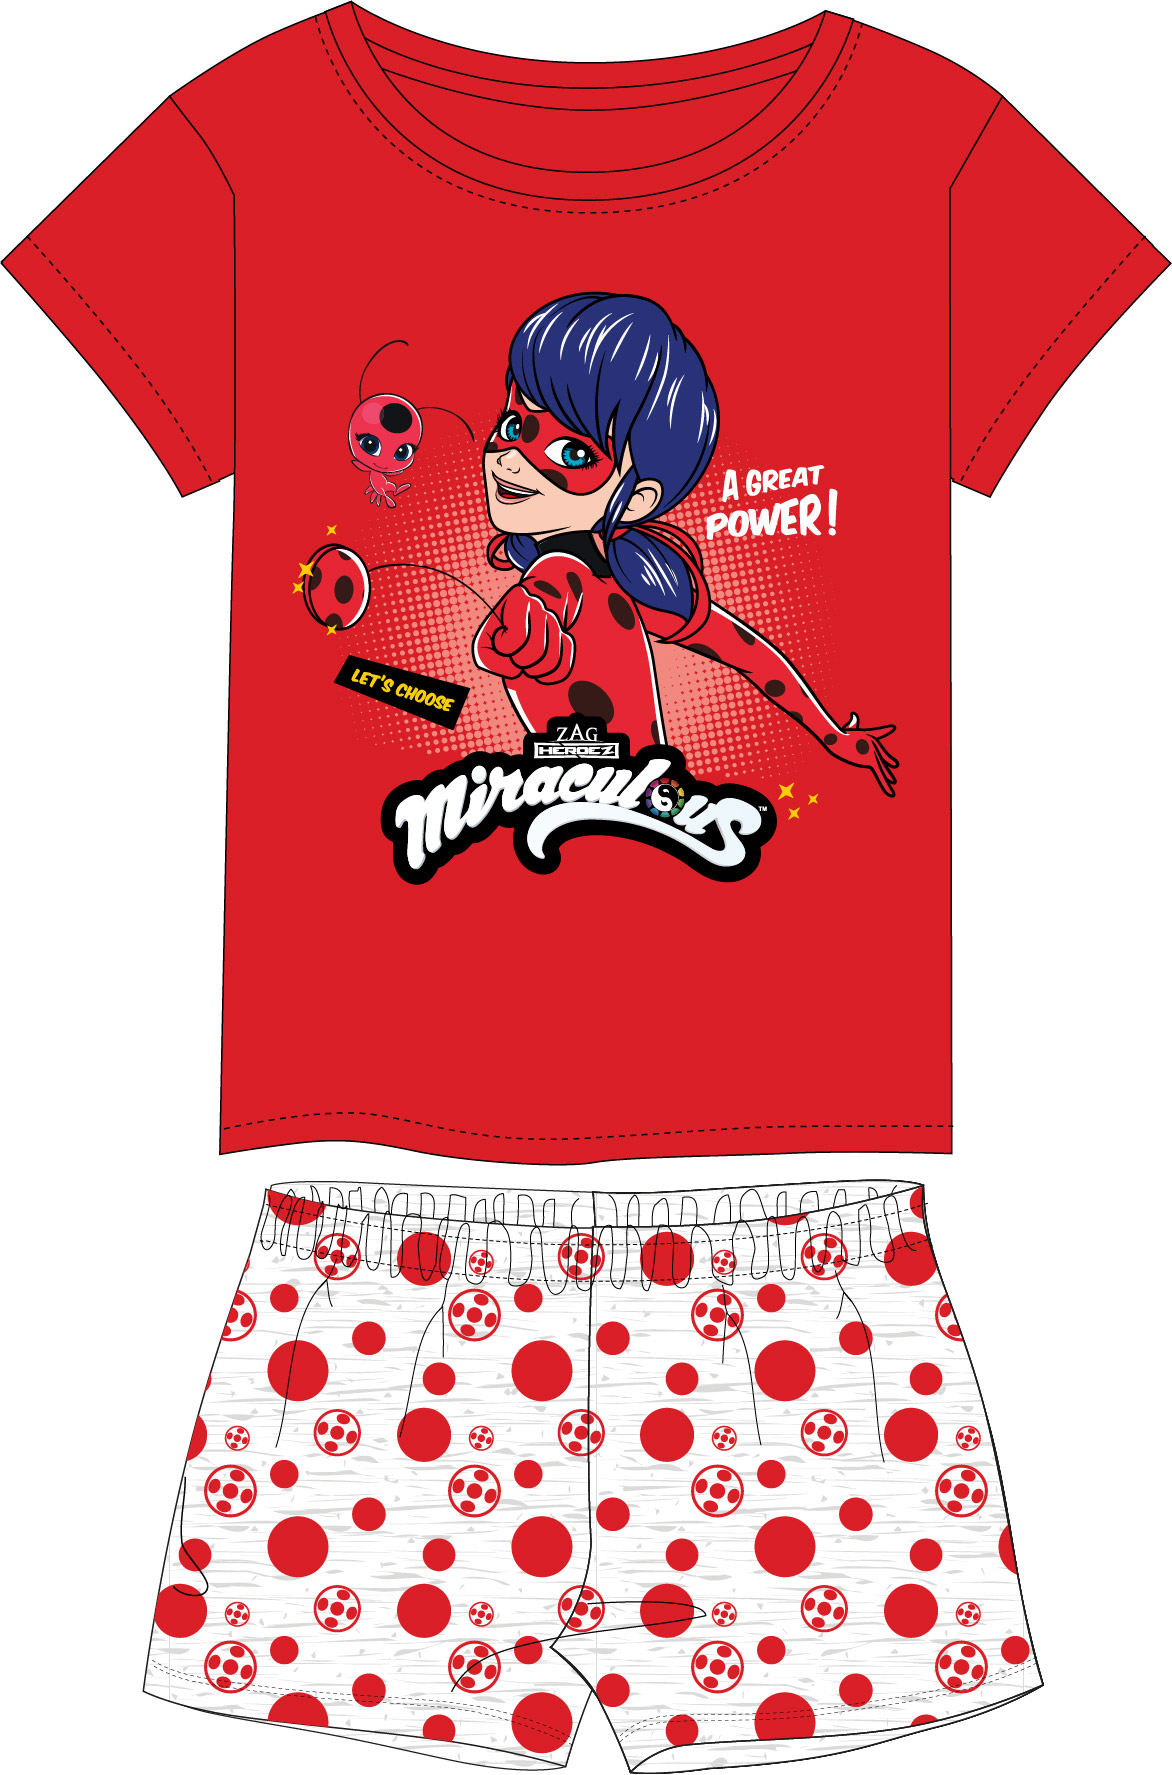 Dívčí pyžamo - Kouzelná Beruška Miraculous 5204245, červená / šedý melír Barva: Červená, Velikost: 146